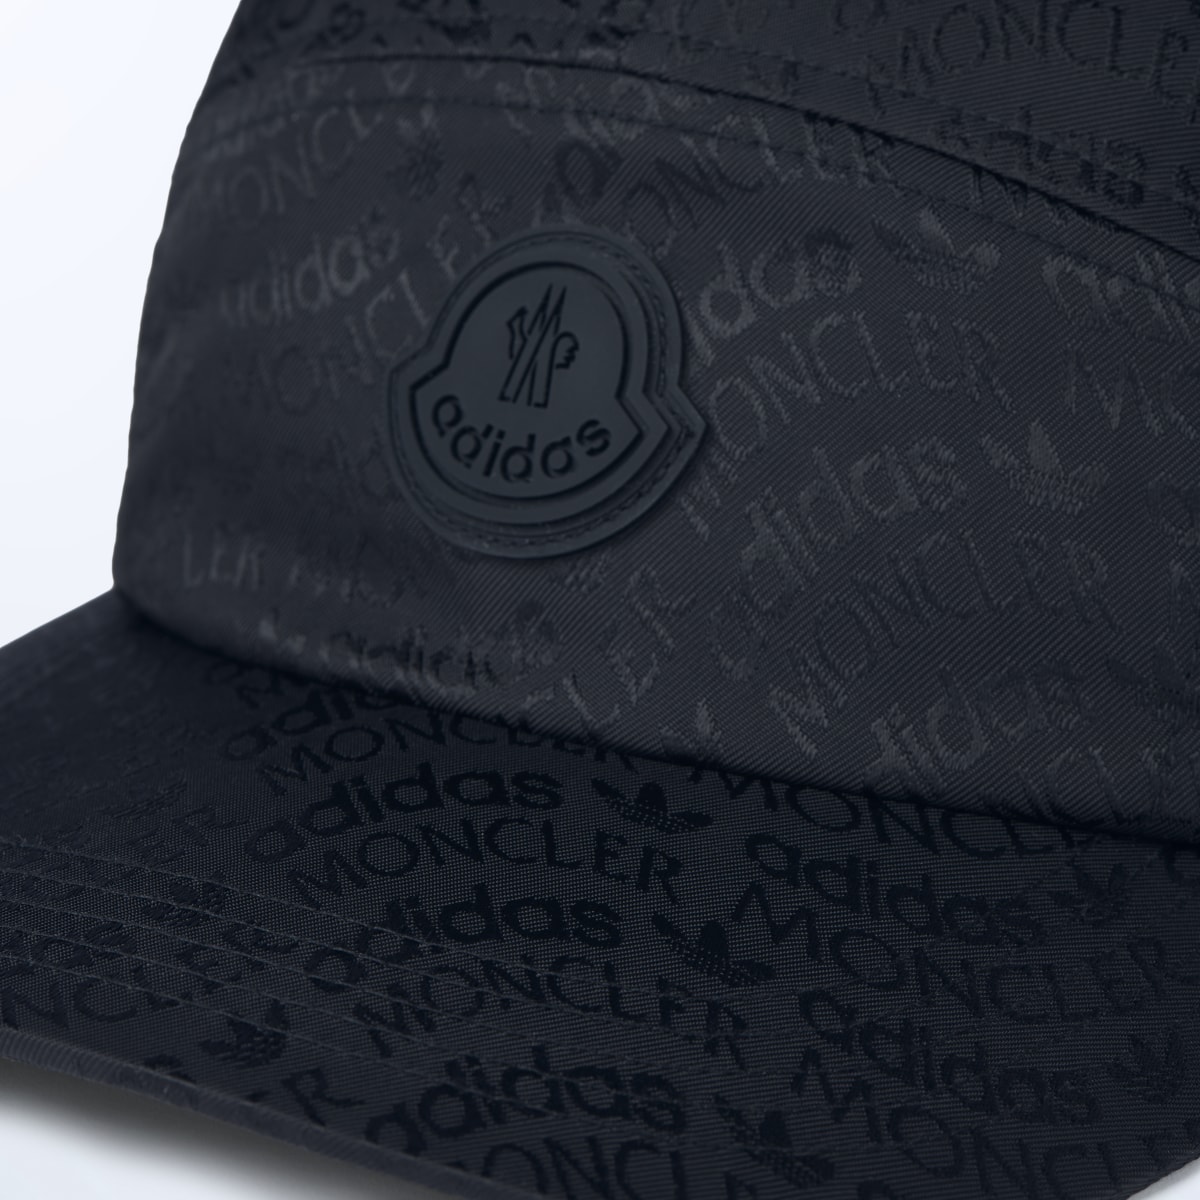 Adidas Moncler x adidas Originals Jacquard Baseball Cap. 4